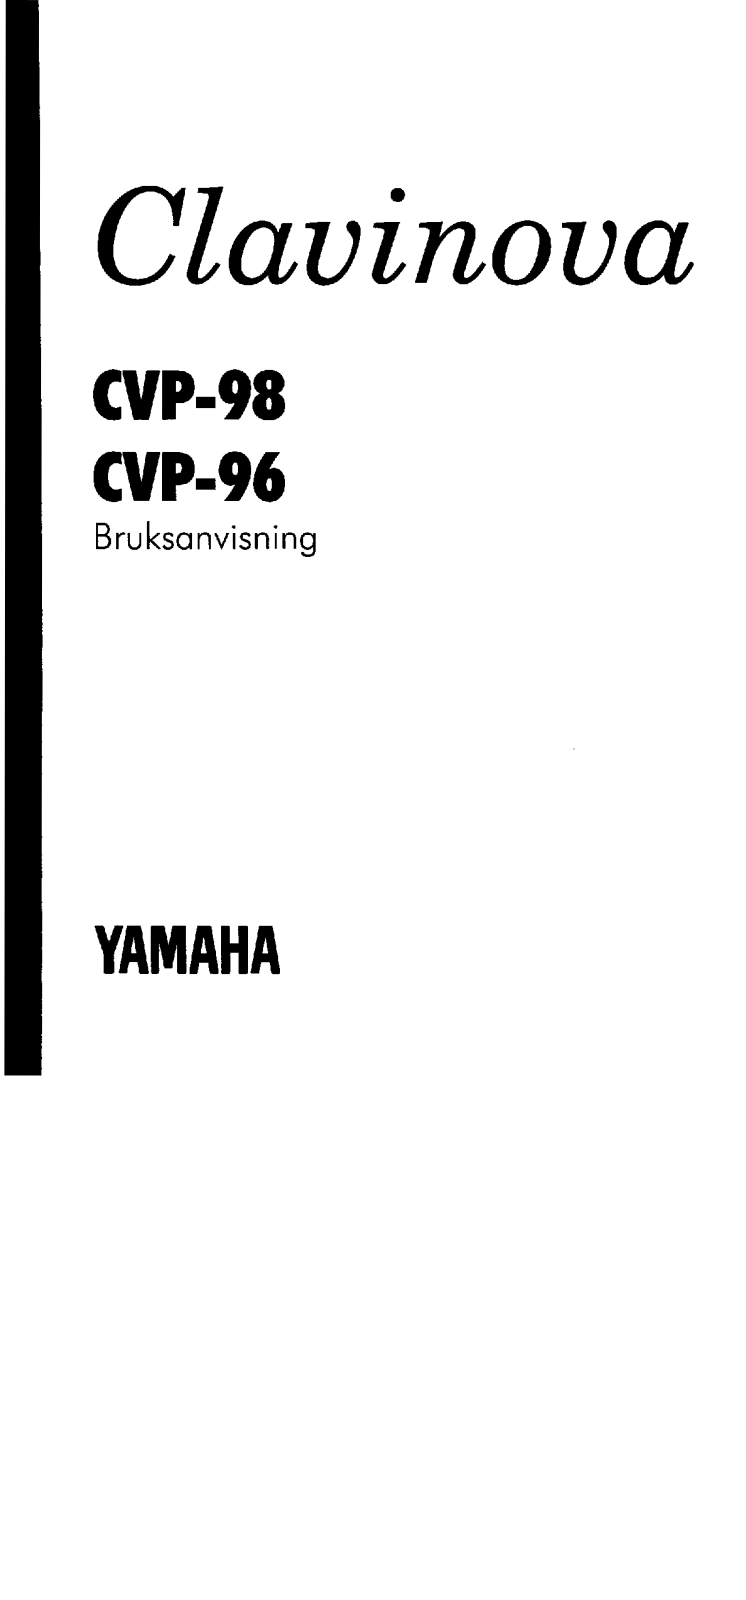 Yamaha CVP-98, CVP-96 User Manual